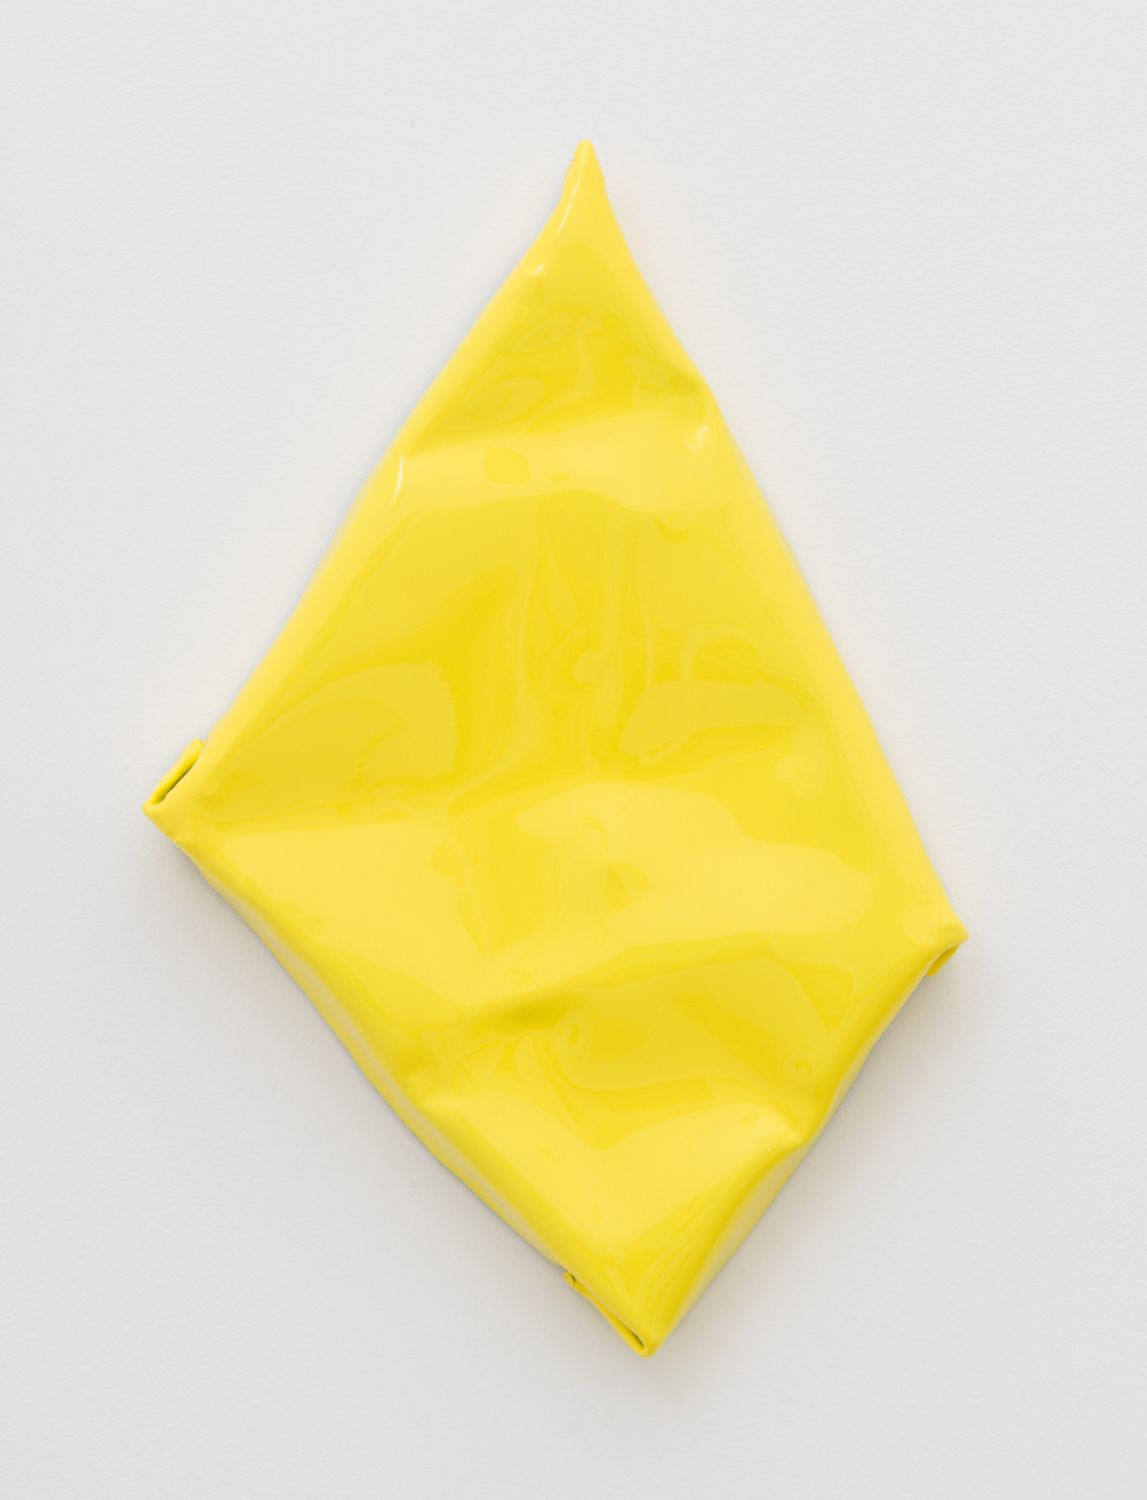 Installation+of+(Untitled,+Lemon),+Tim+Ebner,+ReVerb,+Baik+Art,+2019